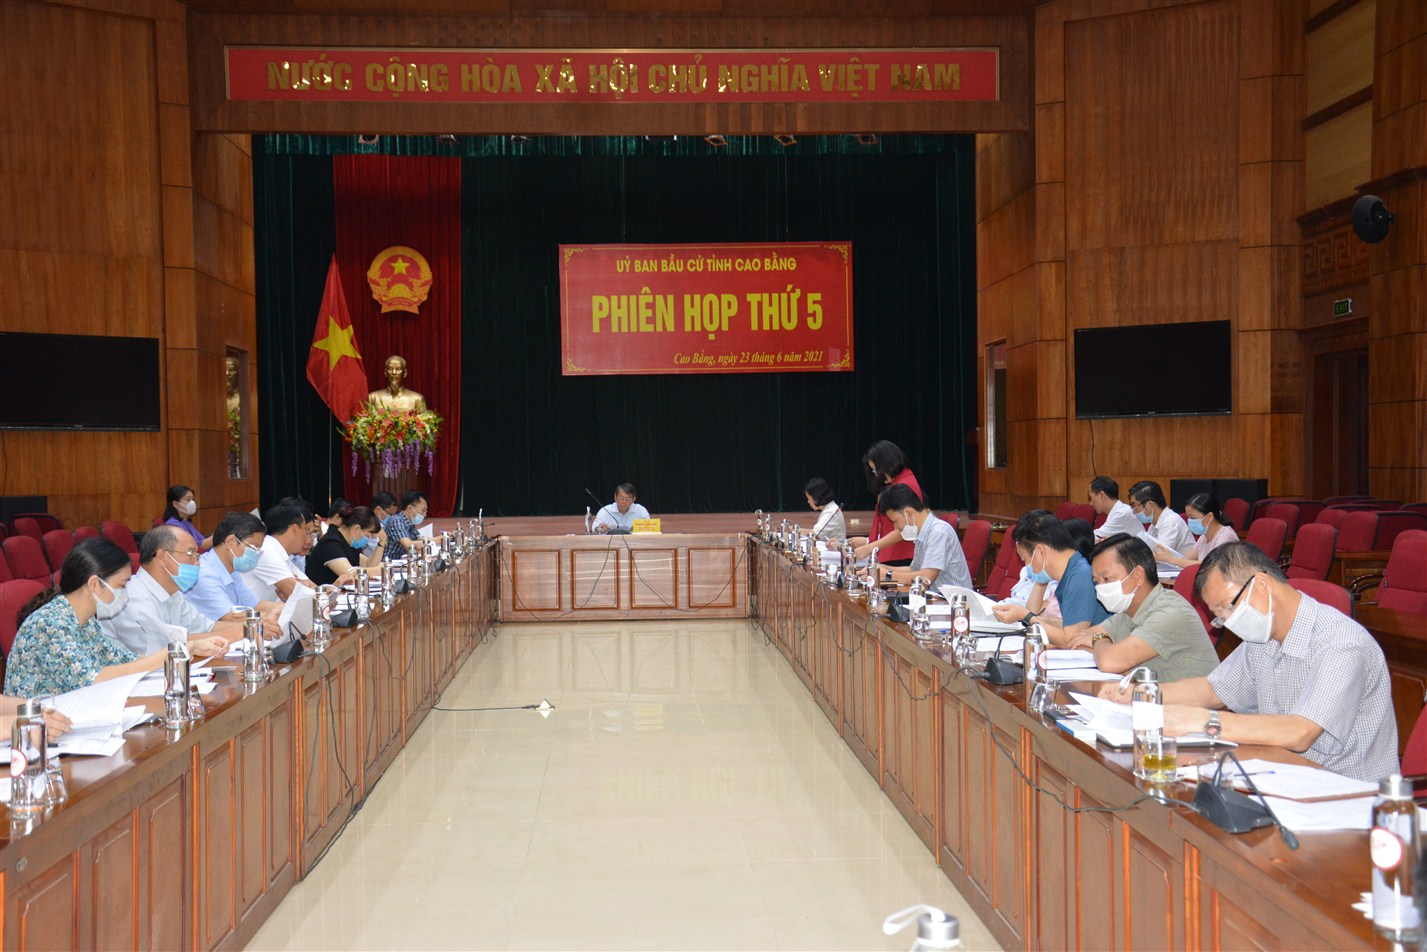 Phiên họp thứ 5 của Uỷ ban bầu cử tỉnh Cao Bằng